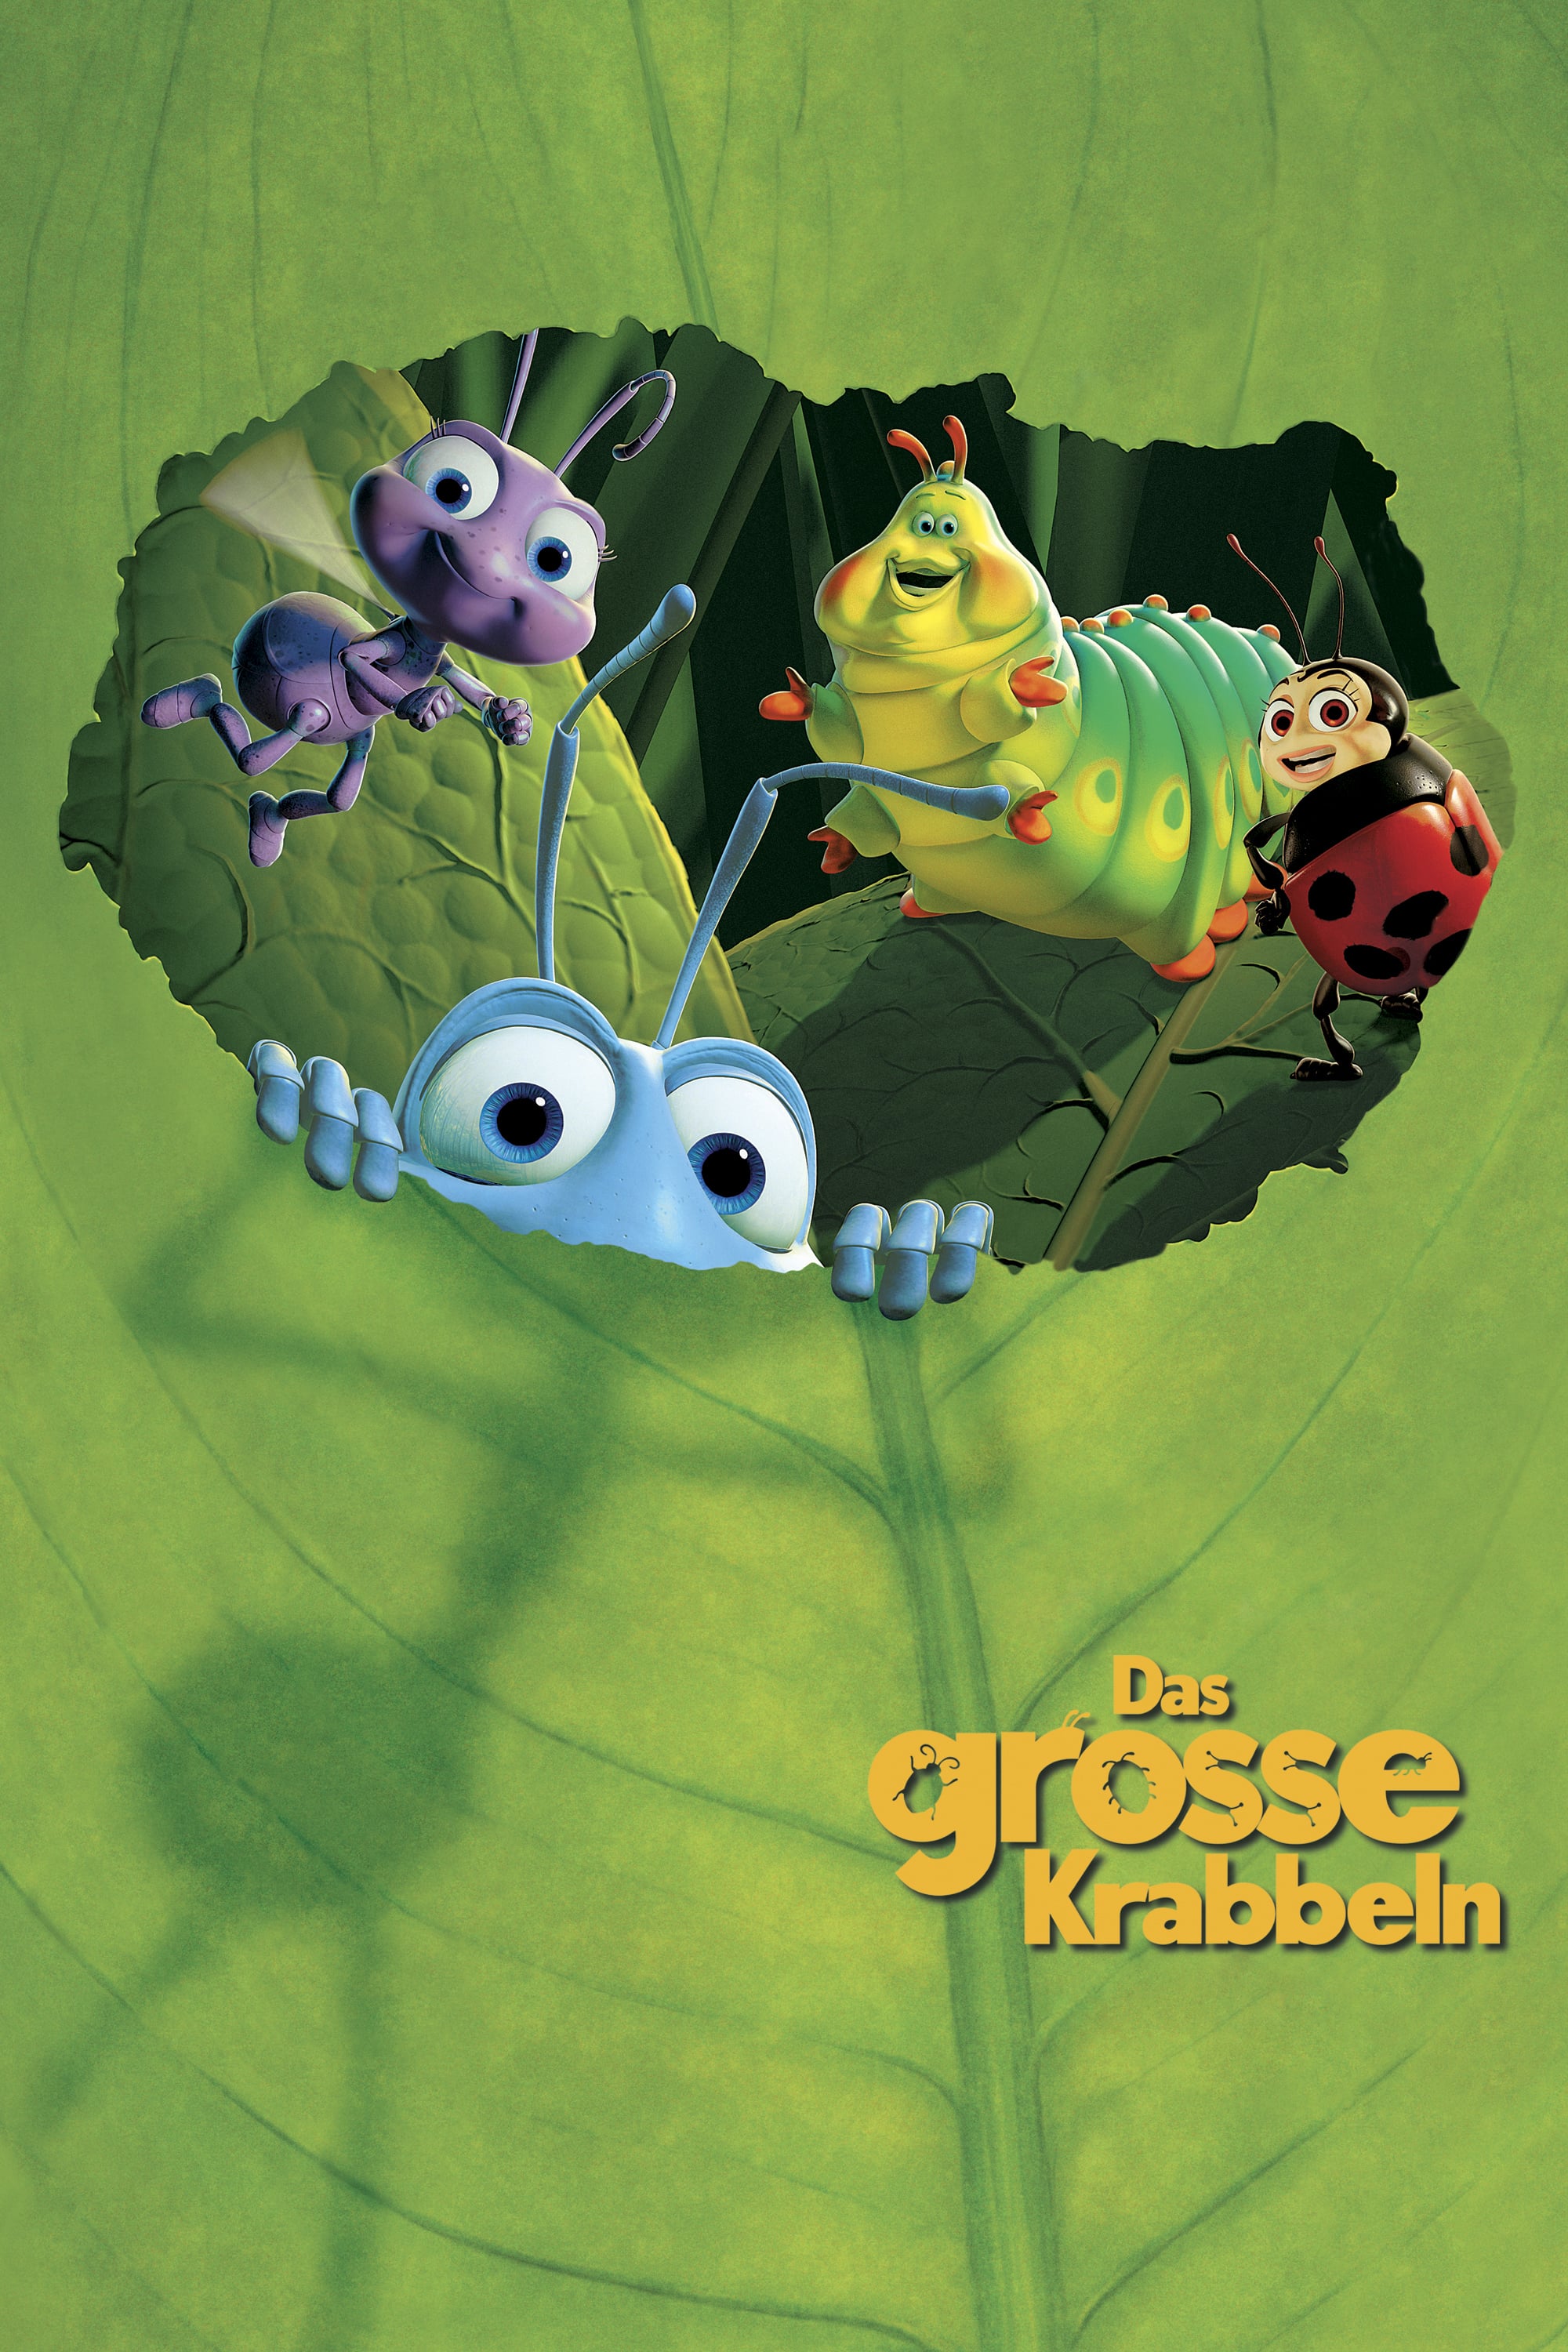 Plakat von "Das grosse Krabbeln"